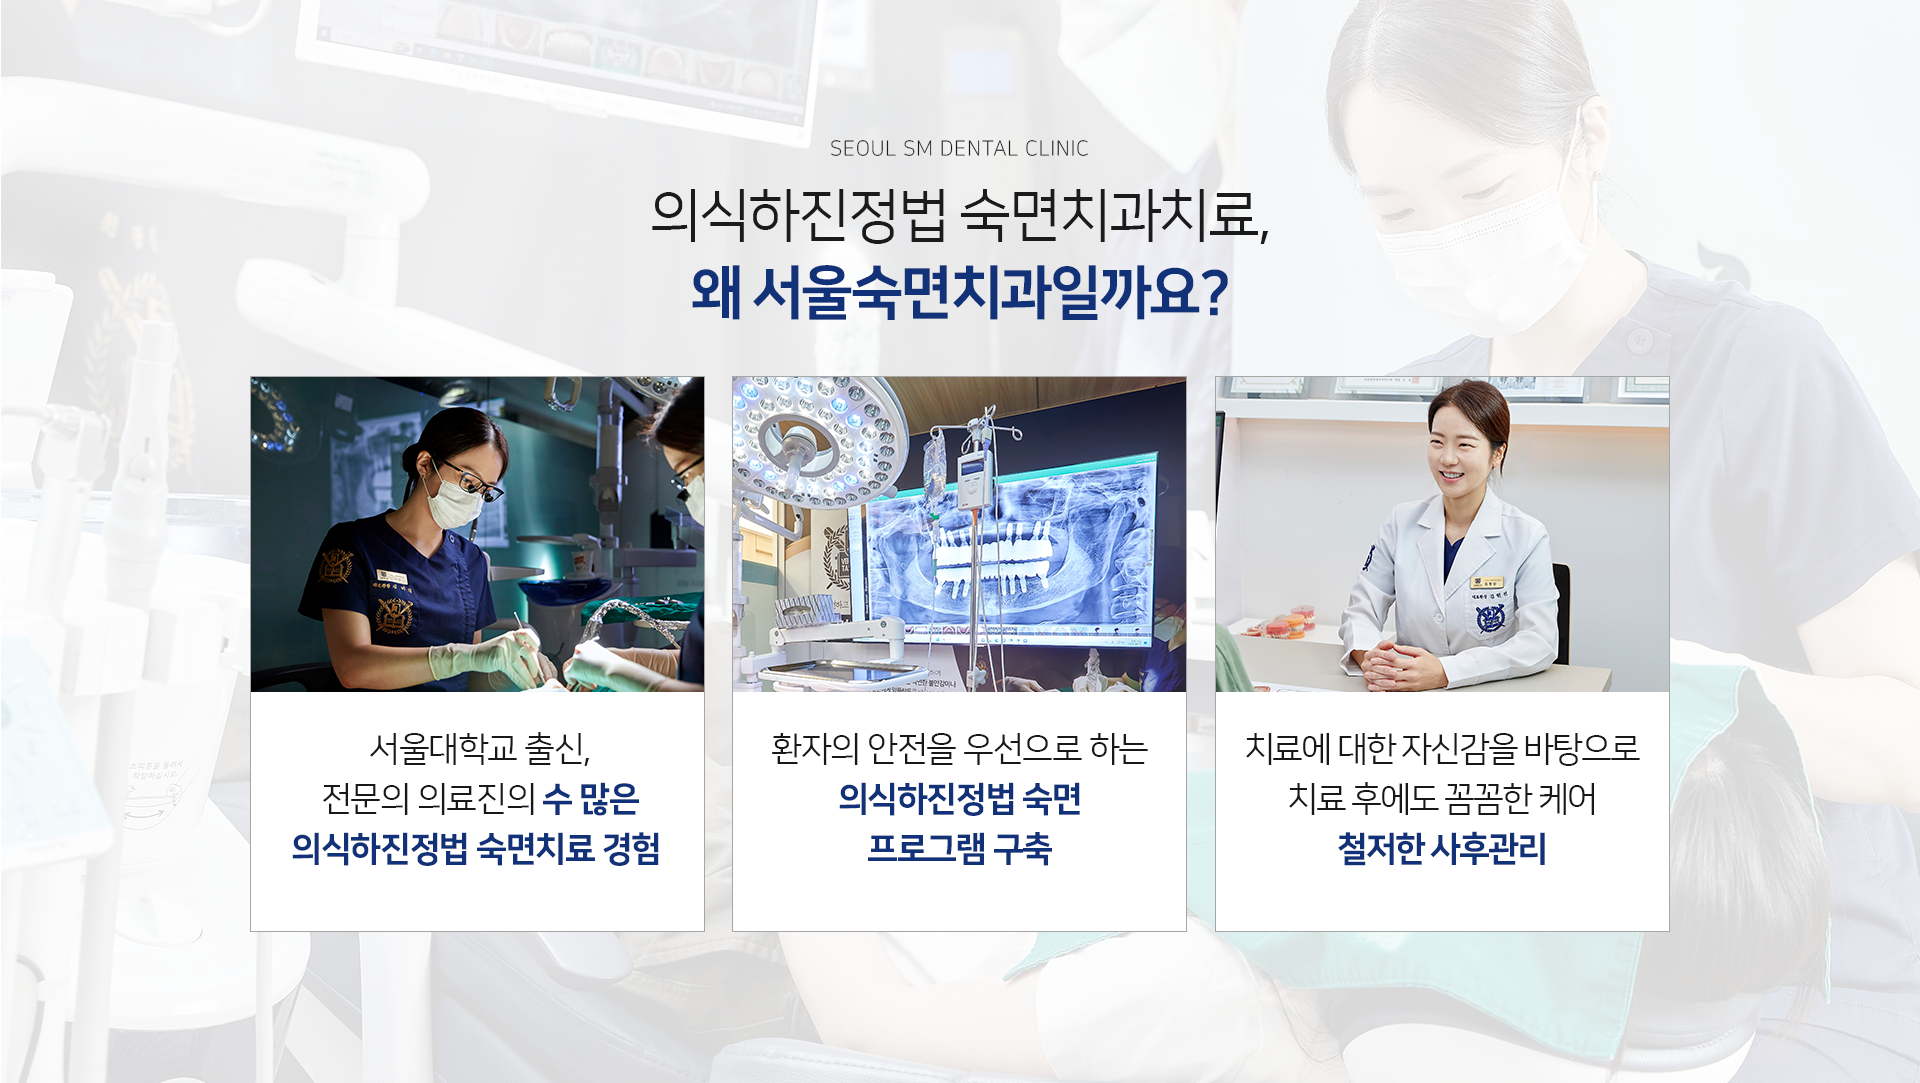 서울대학교-출신-전문의-의료진의-수-많은-수면치료-경험-환자의-안전을-우선으로-하는-안전-수면-프로그램-구축-치료에-대한-자신감을-바탕으로-치료-후에도-꼼꼼한-케어-철저한-사후관리